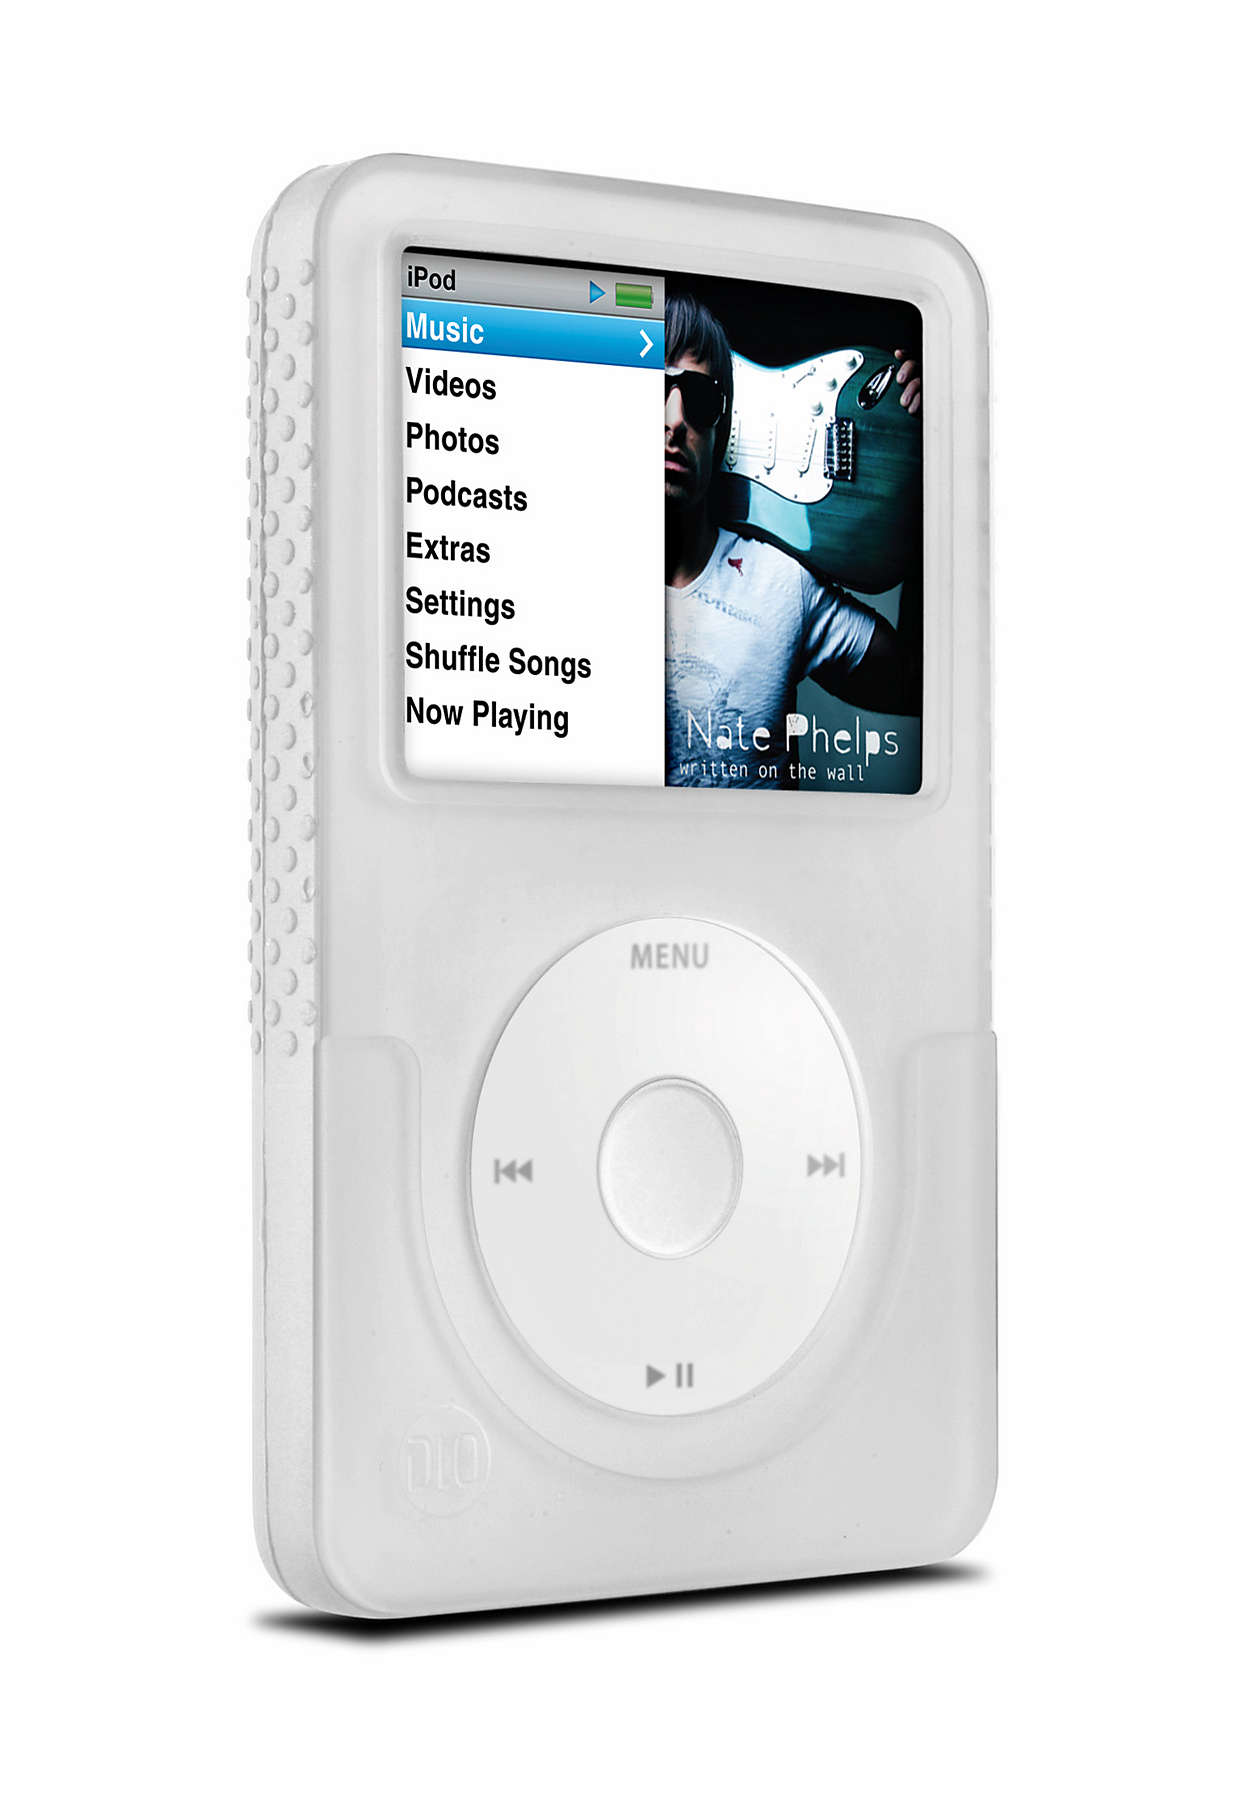 Aizsargājiet savu iPod stilīgi